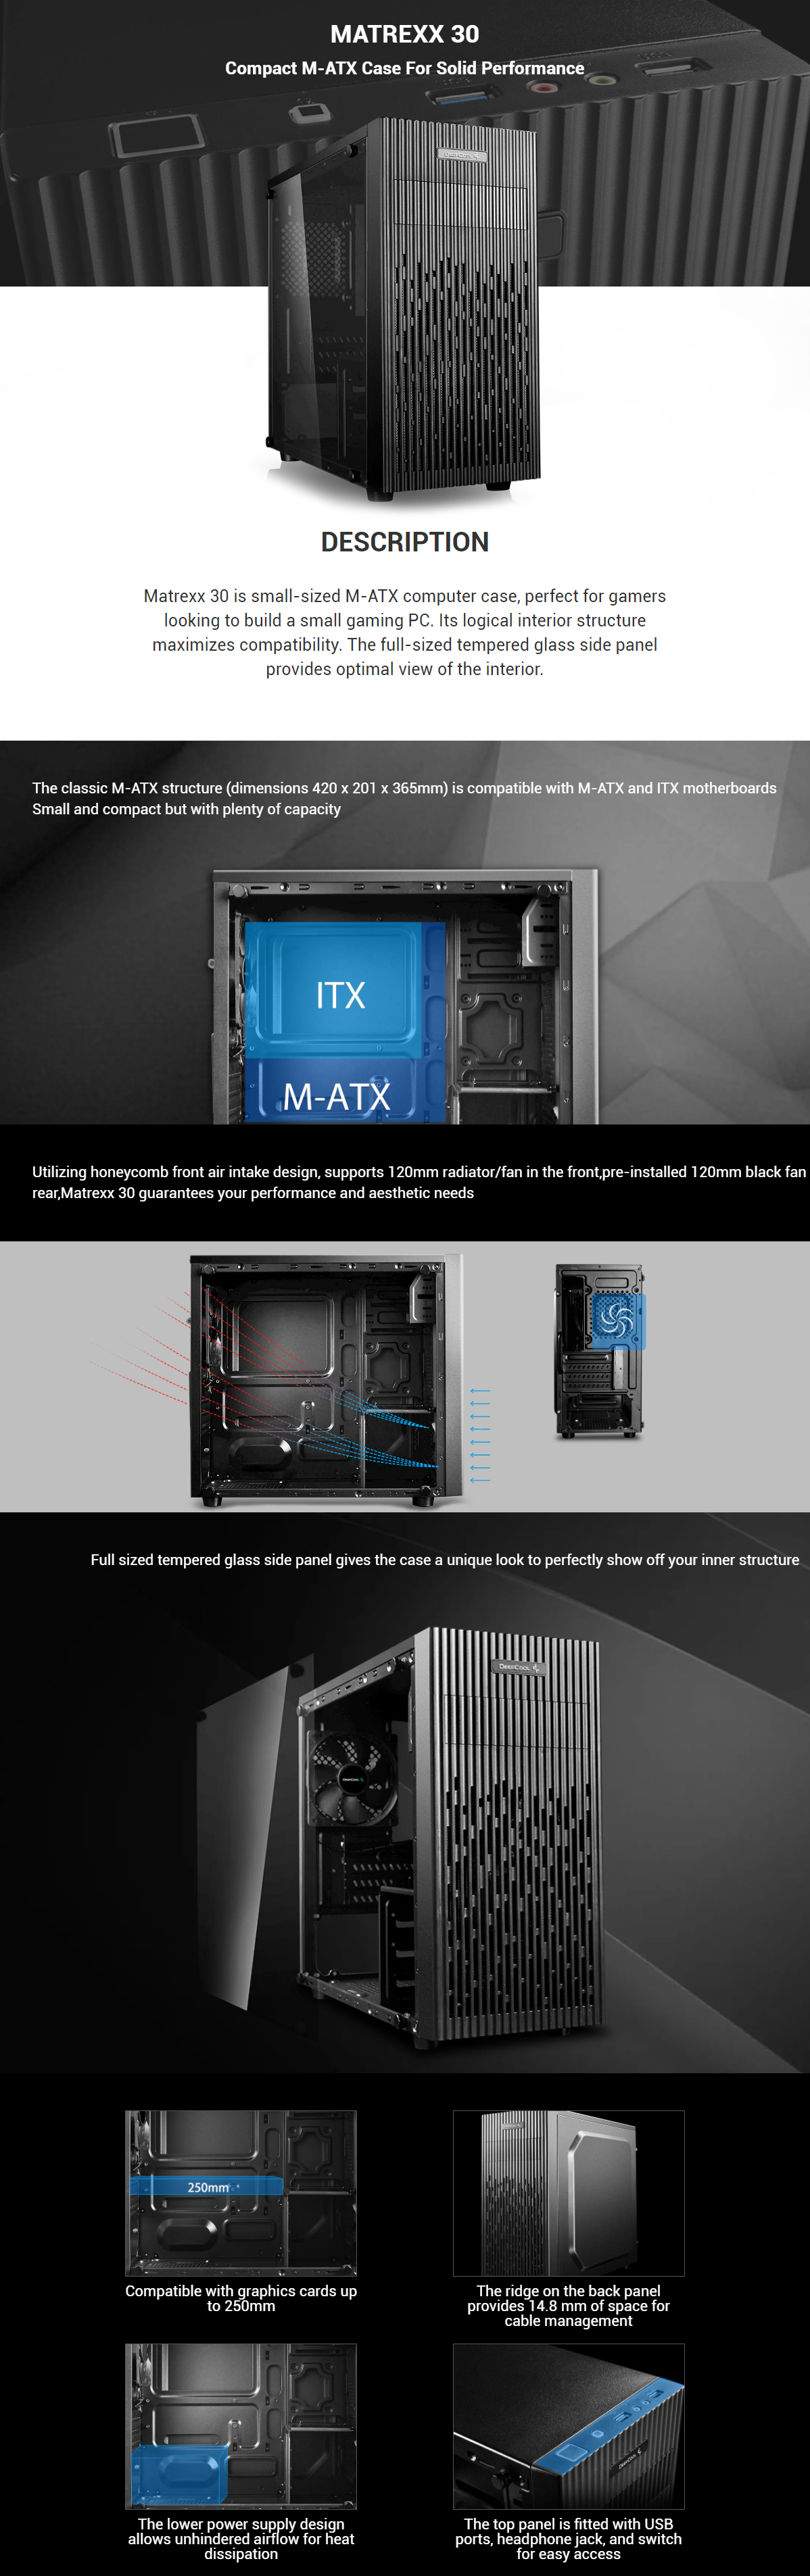 Deepcool-Cases-Deepcool-Matrexx-30-Tempered-Glass-Mini-Tower-mATX-Case-Black-DP-MATX-MATREXX30-1